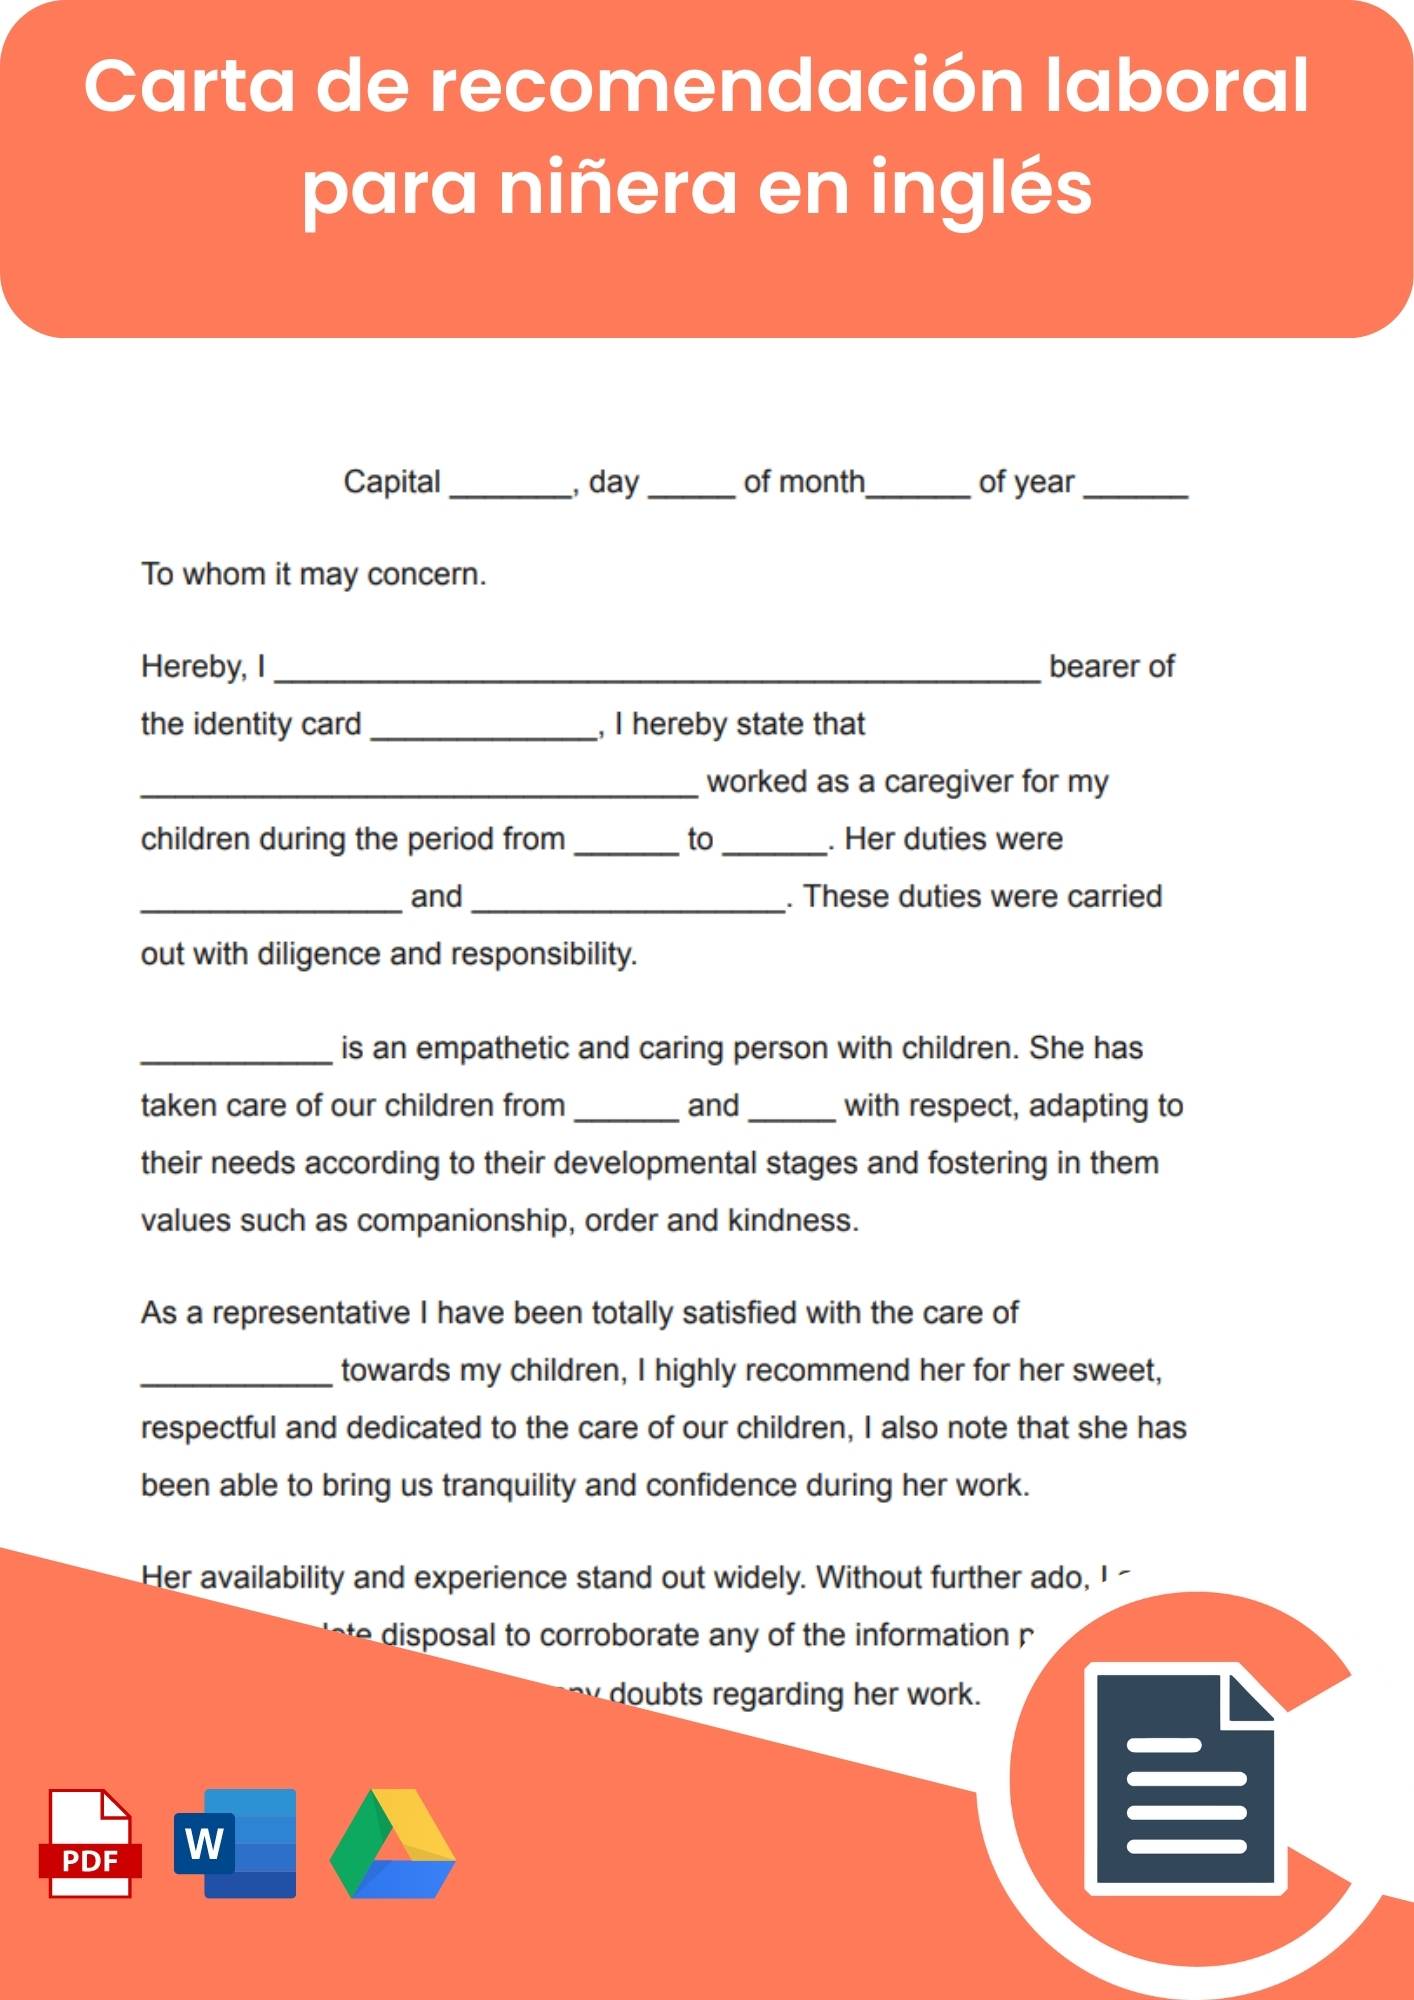 Carta de recomendación laboral para niñera en inglés